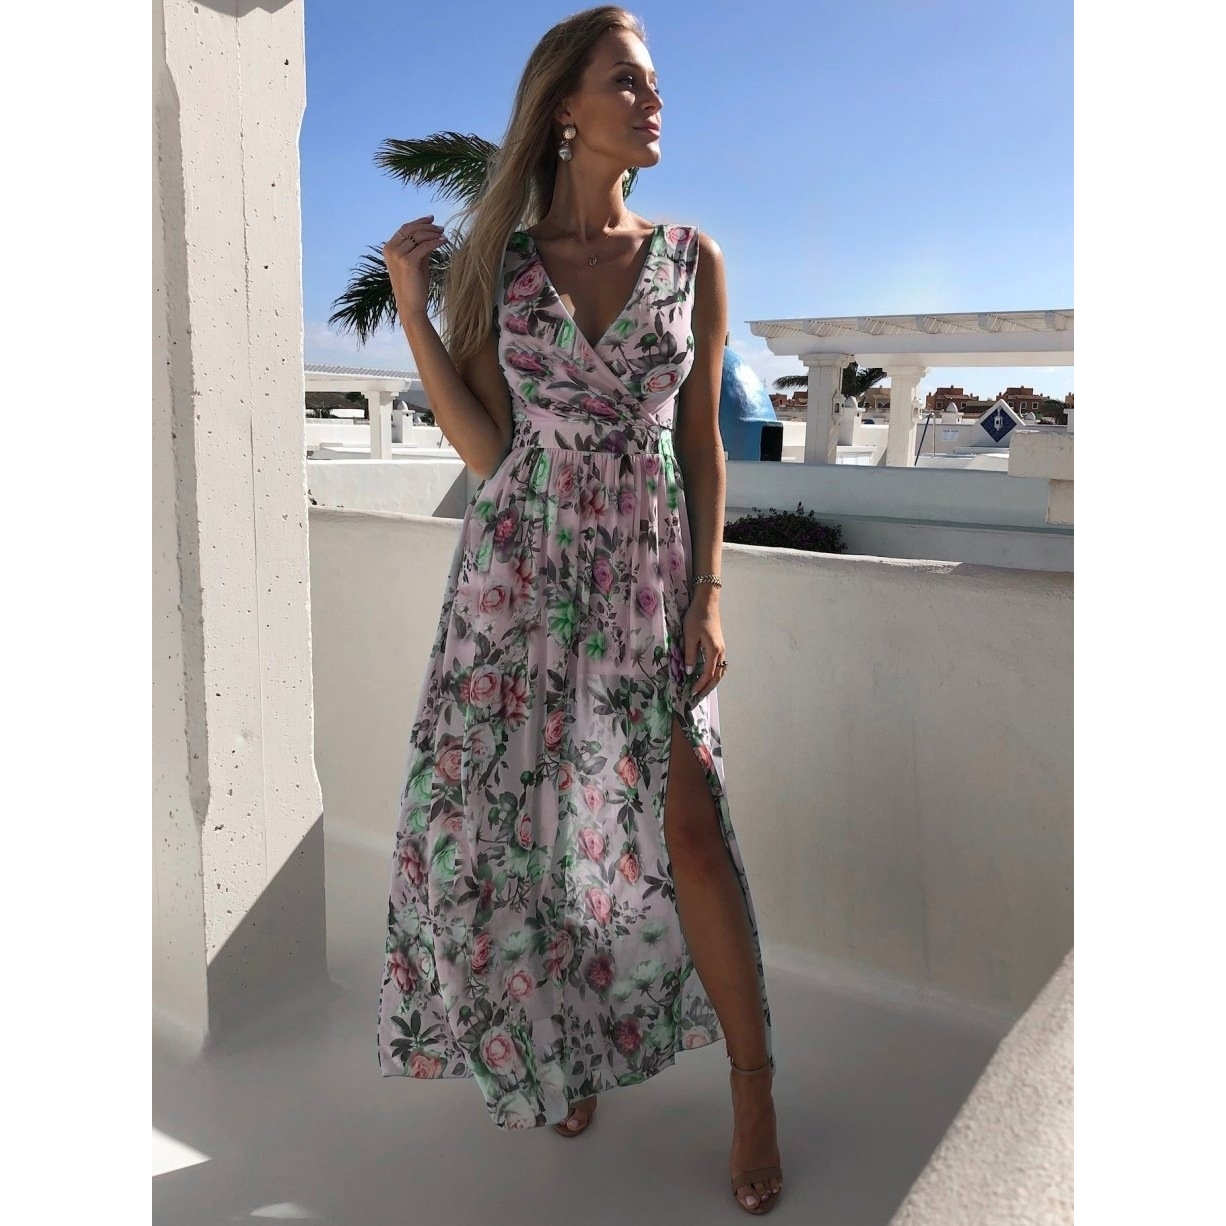 Printed Chiffon Dress Sleeveless Holiday Beach Split Maxi Dress - Pink, M